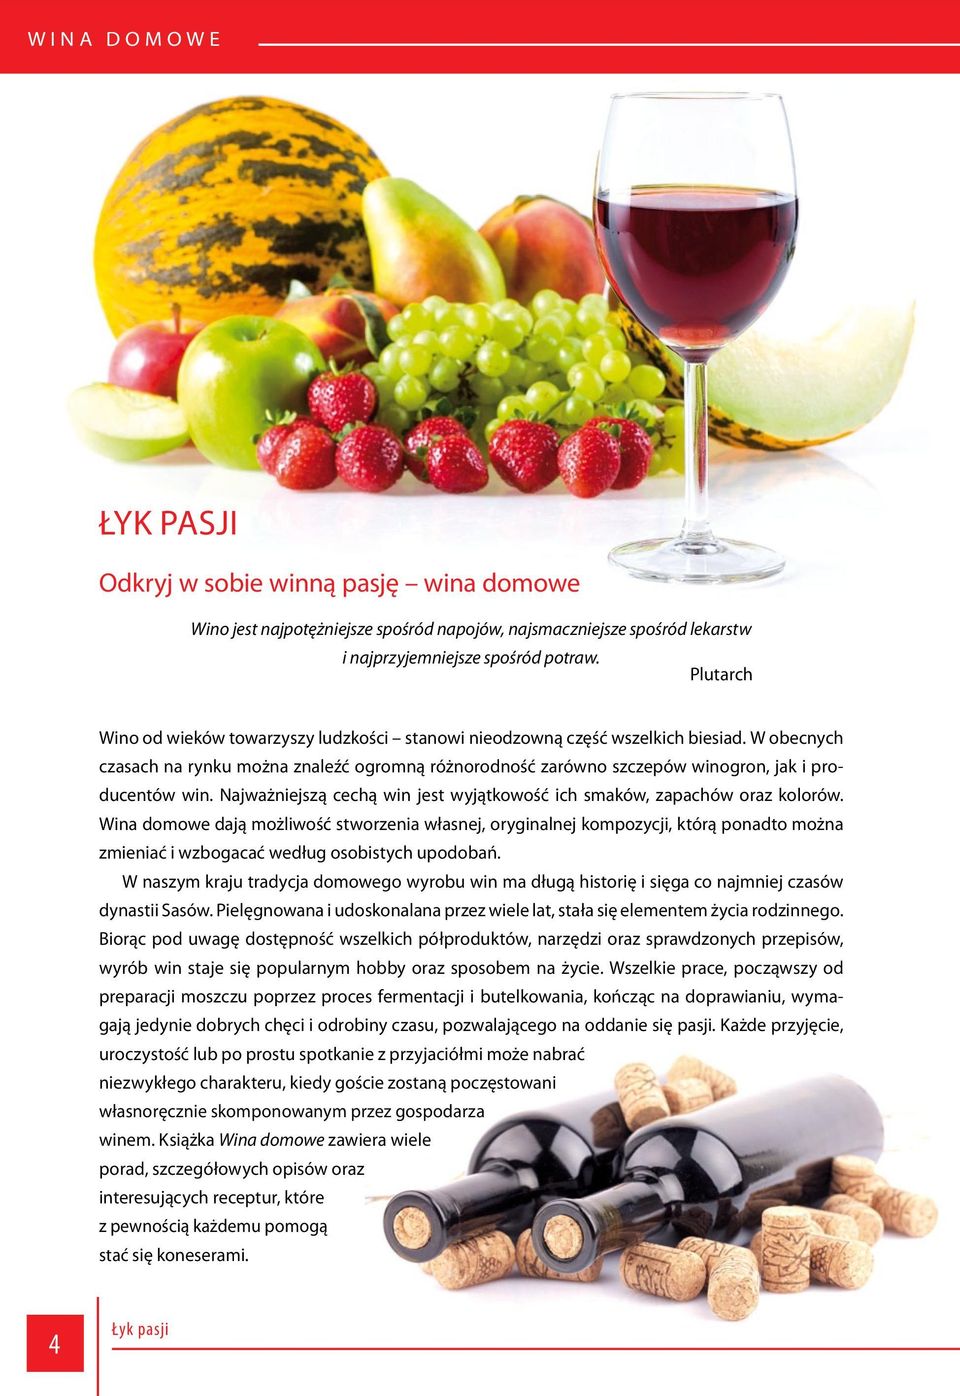 W obecnych czasach na rynku można znaleźć ogromną różnorodność zarówno szczepów winogron, jak i producentów win. Najważniejszą cechą win jest wyjątkowość ich smaków, zapachów oraz kolorów.